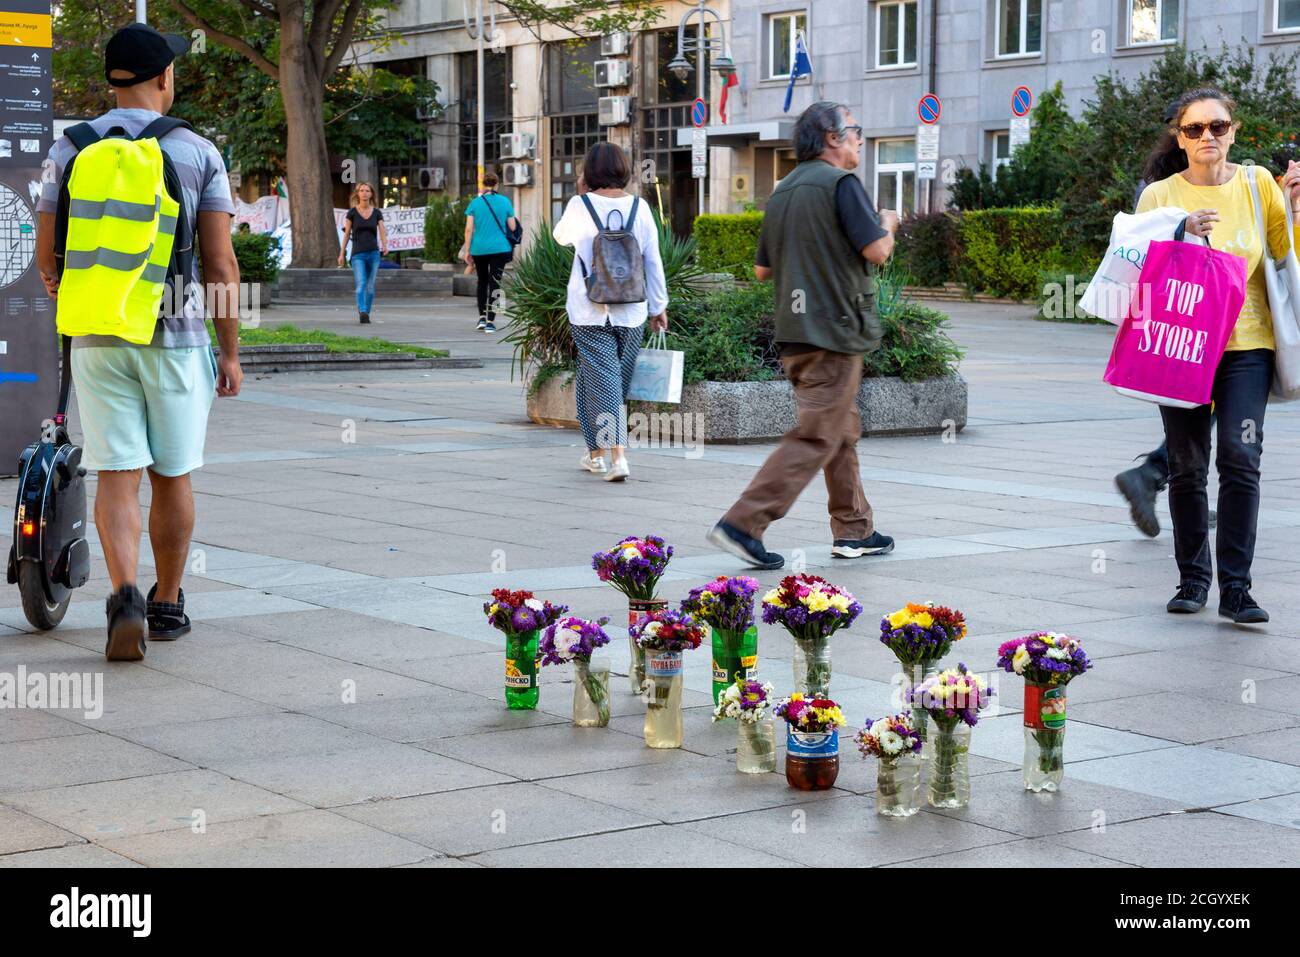 Piétons passant par des bouquets de fleurs pour la vente en exposition dans Vases en plastique impromptus sur la chaussée dans le centre de Sofia Bulgarie Banque D'Images